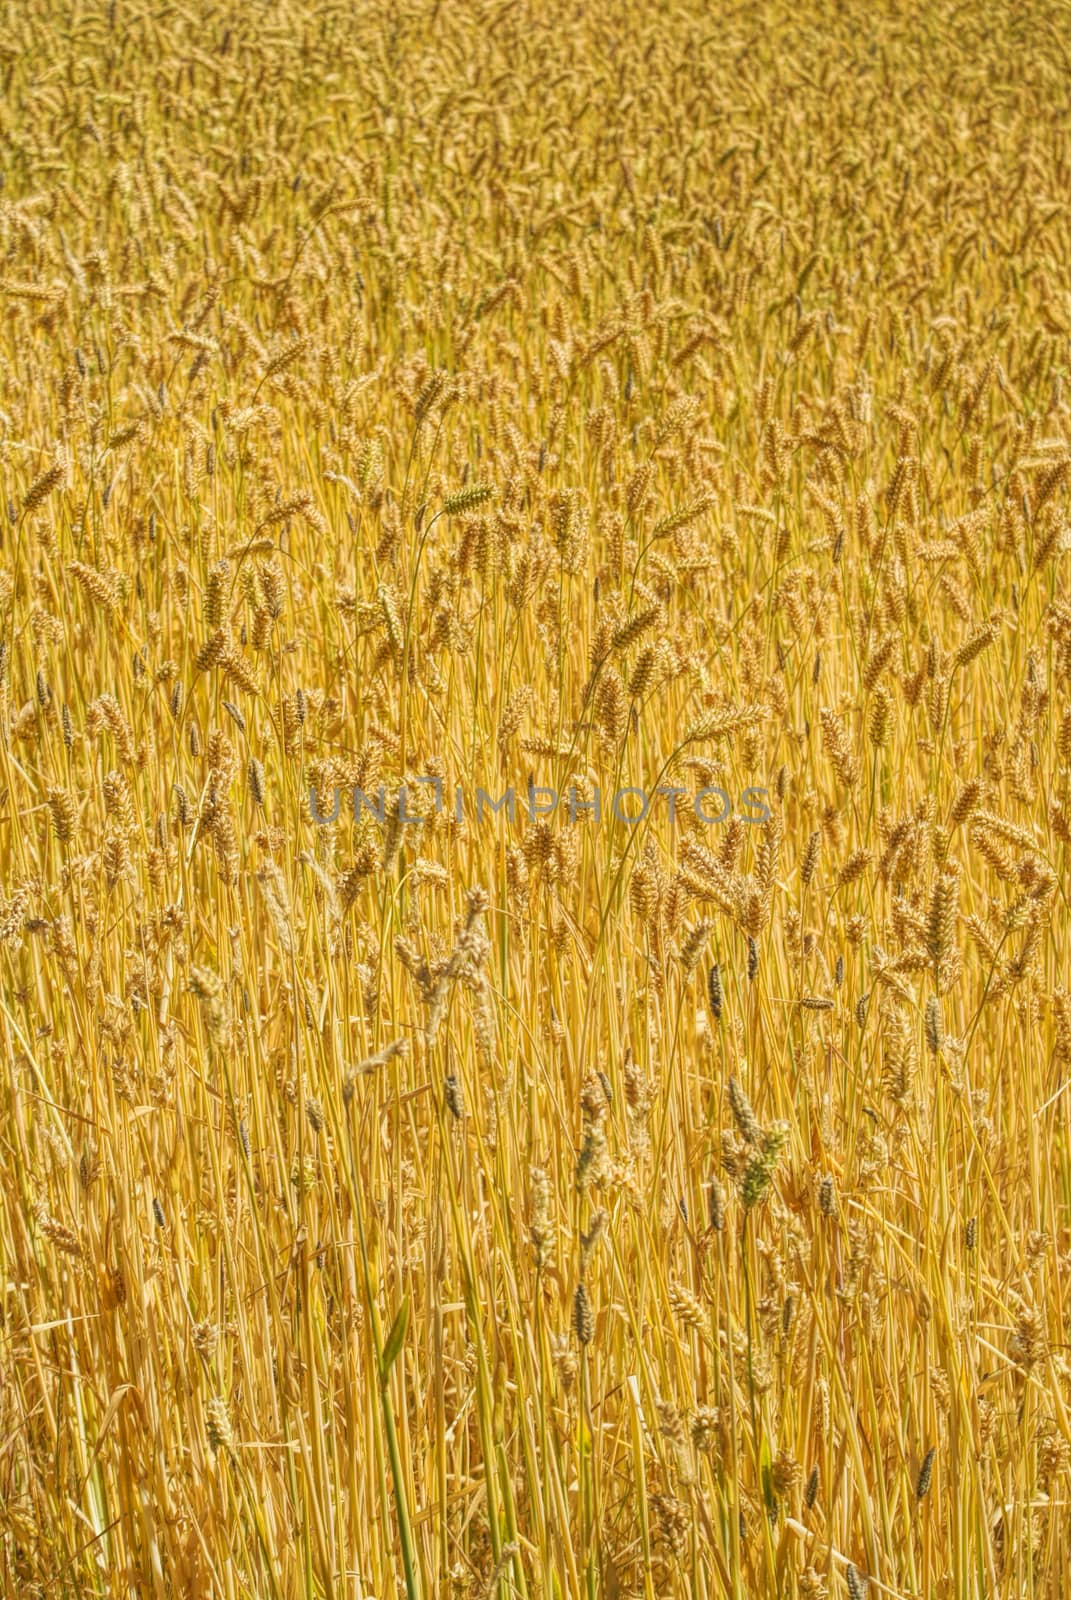 Wheat field by MichalKnitl